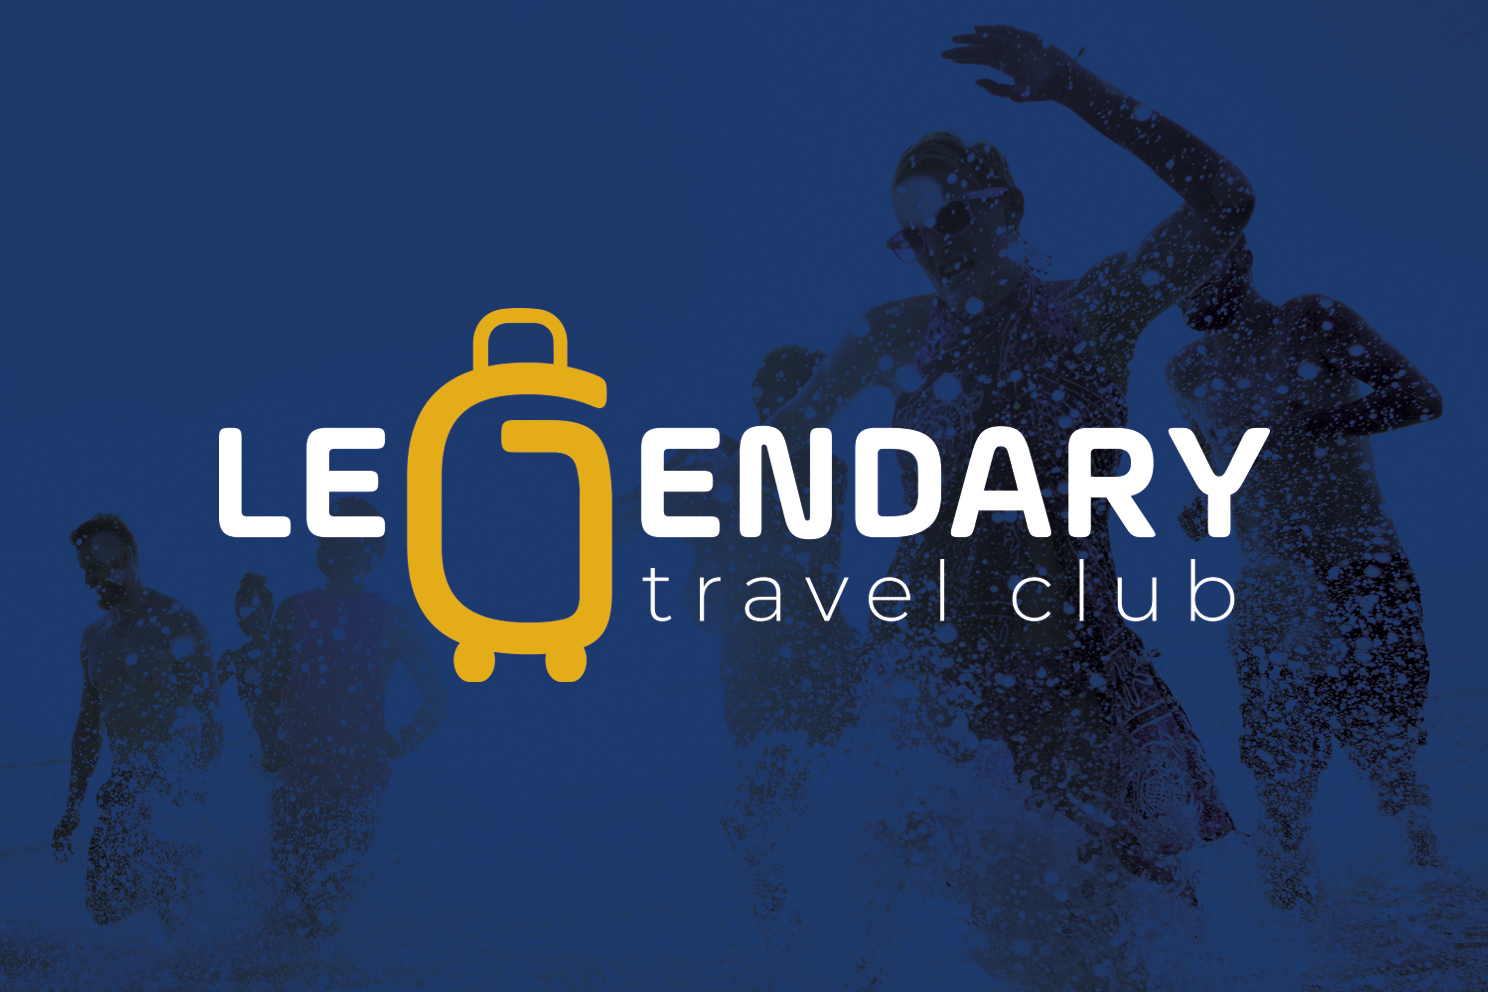 legendary travel club quejas